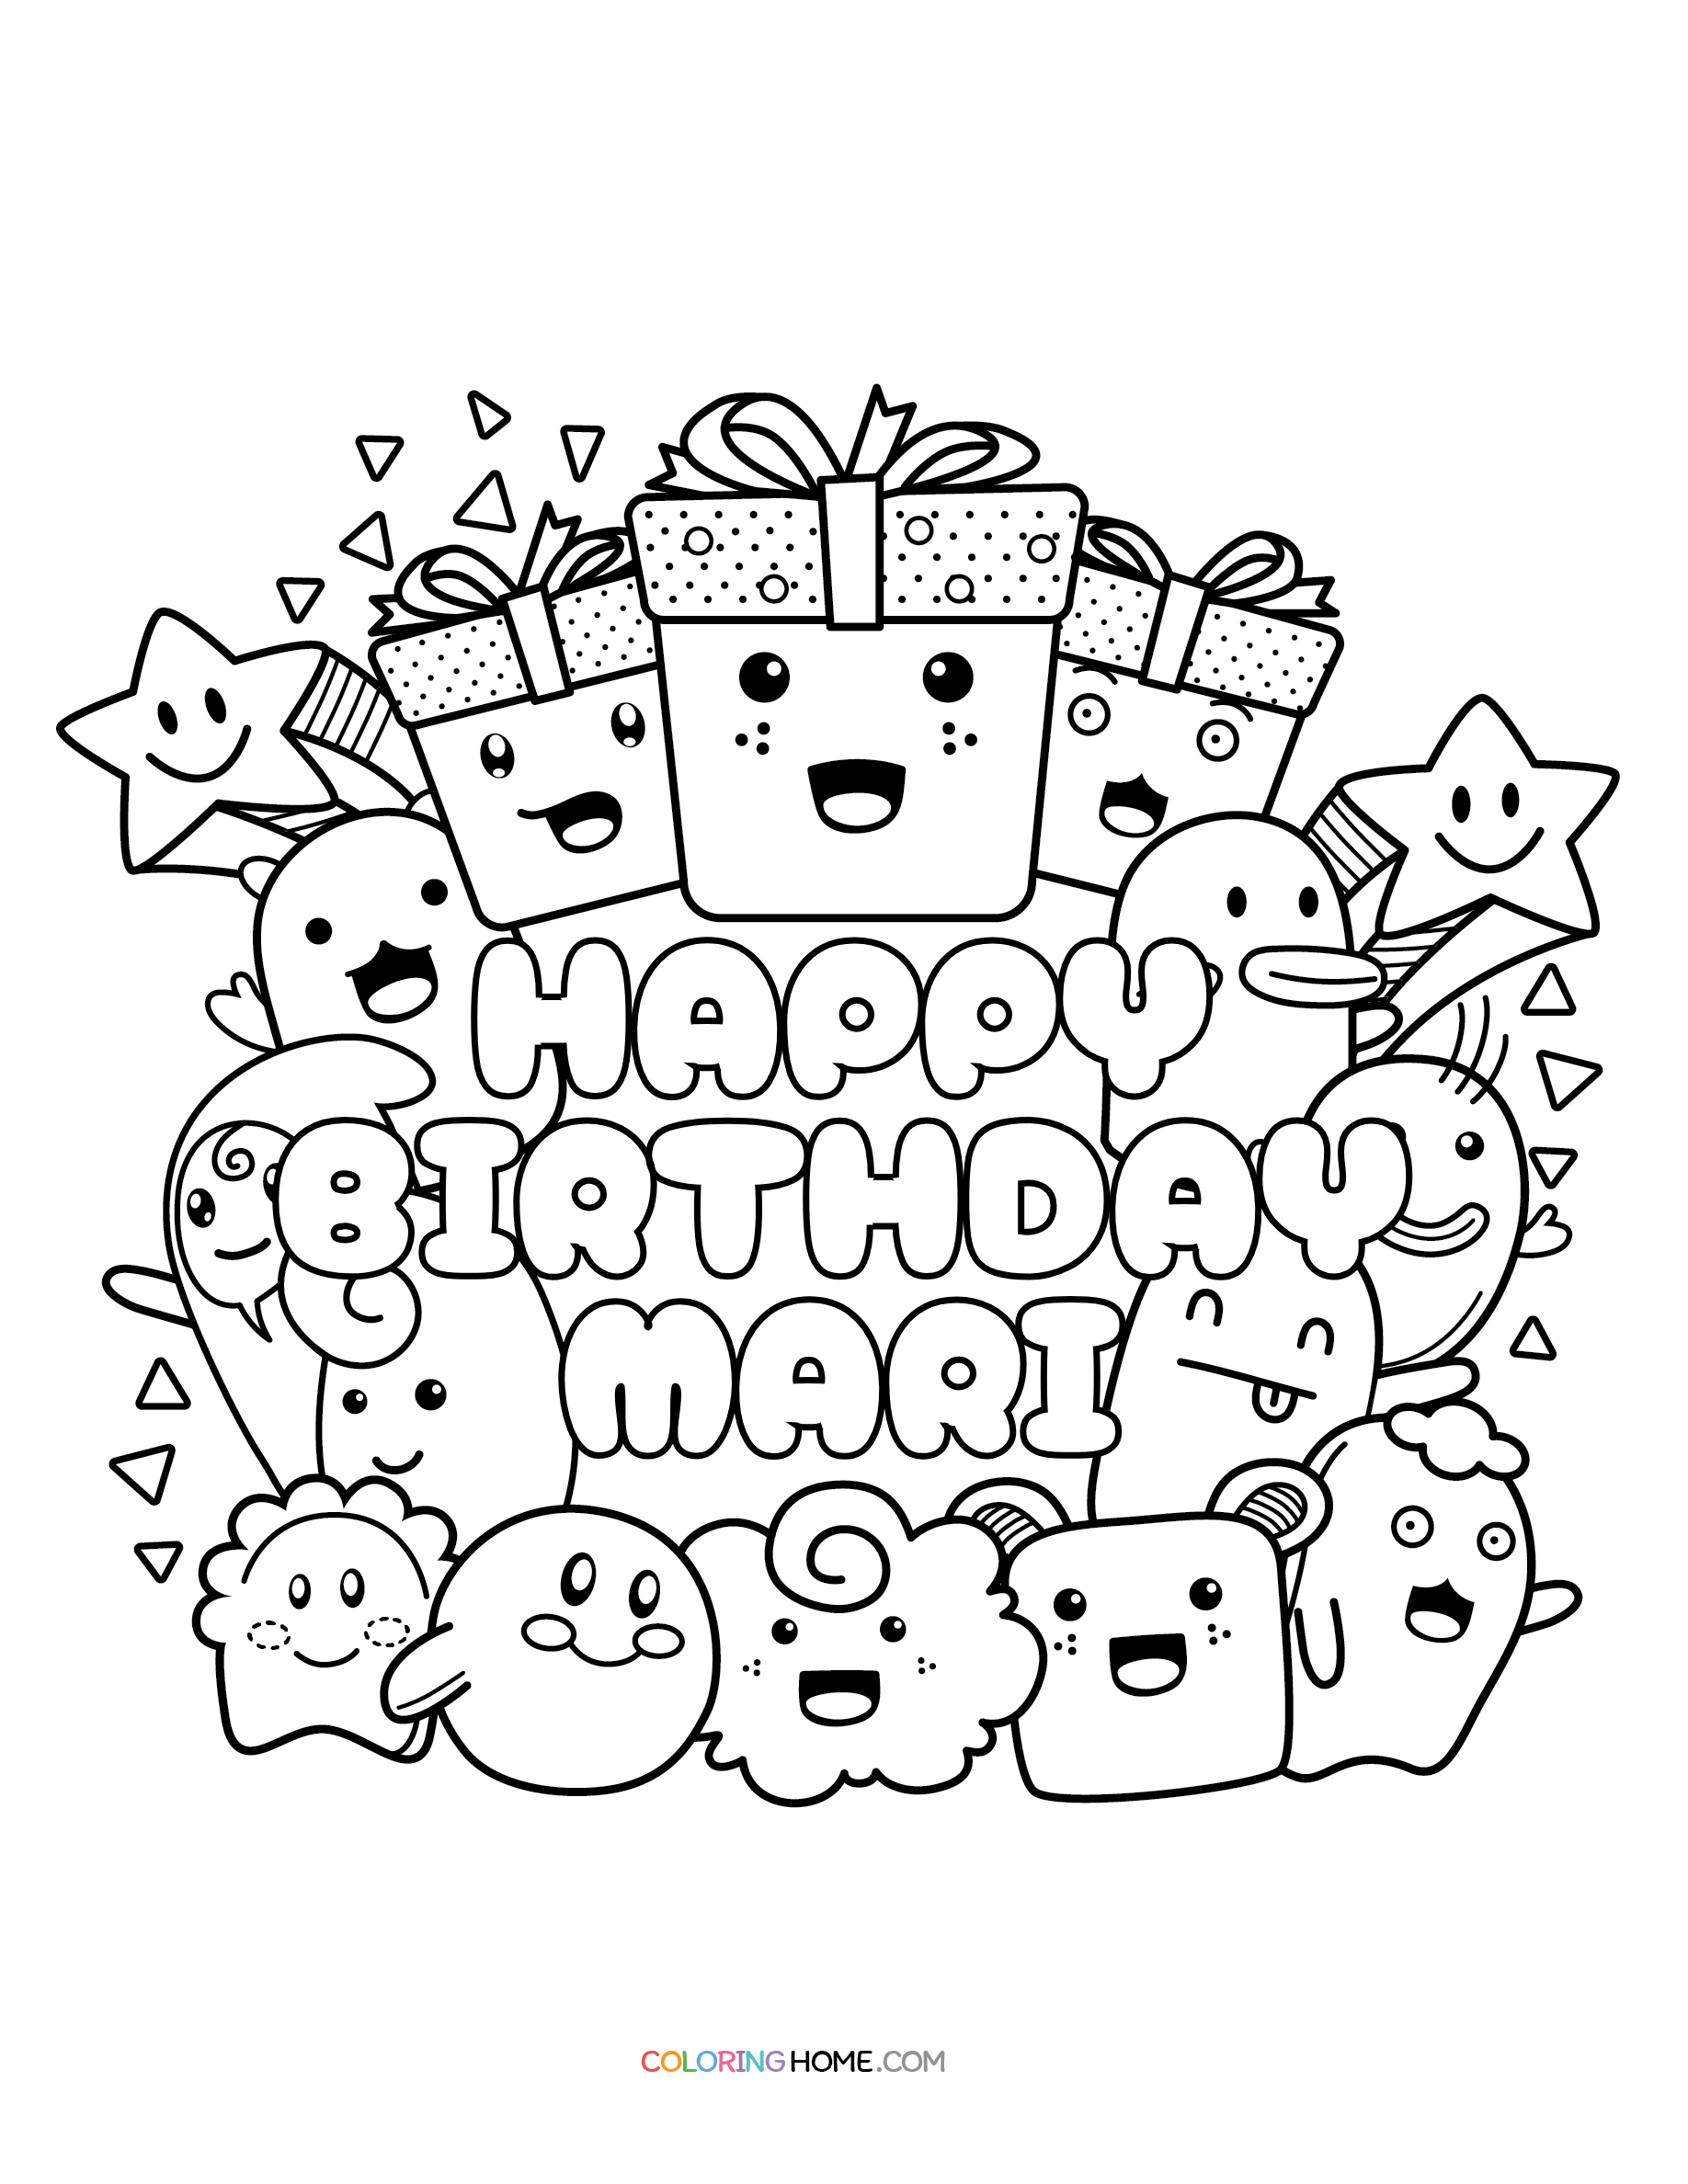 Happy Birthday Mari coloring page